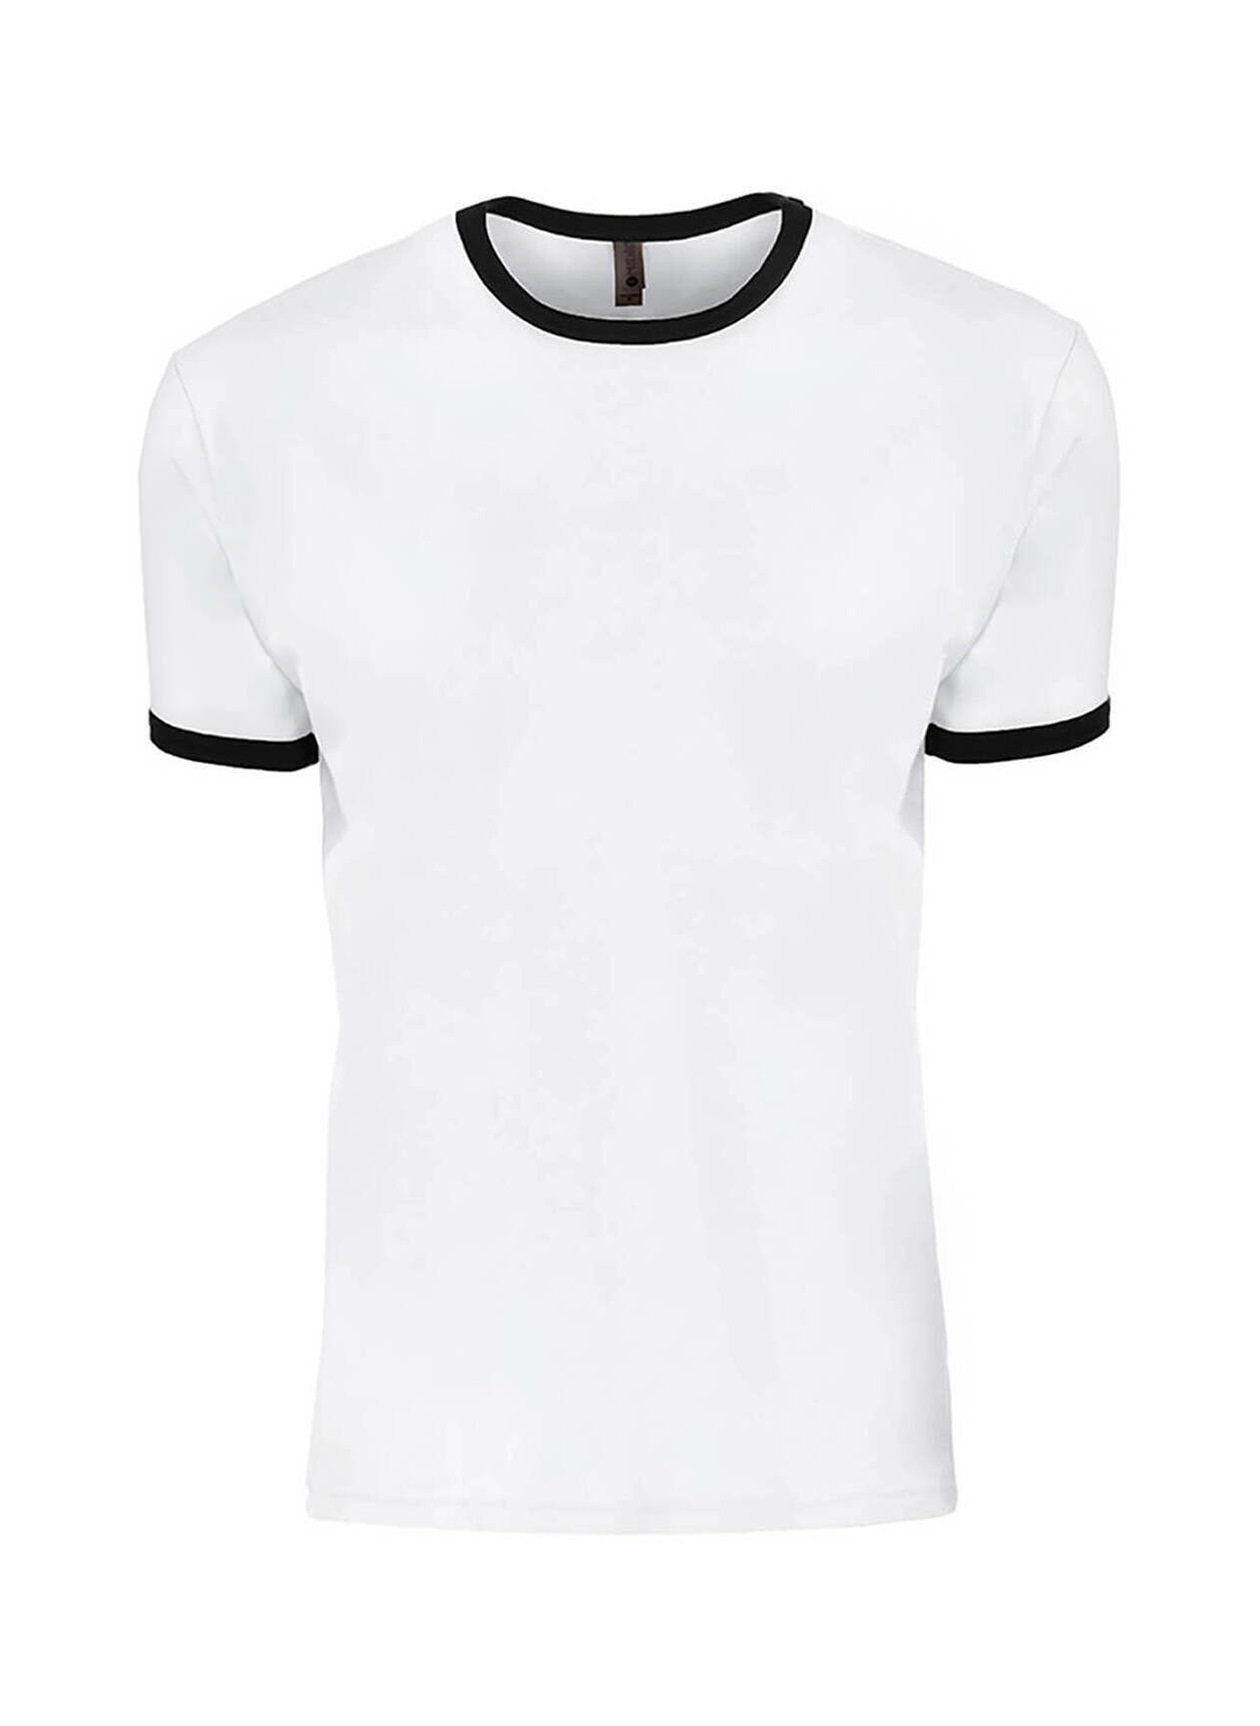 Next Level Men's White / Black Unisex Ringer T-Shirt